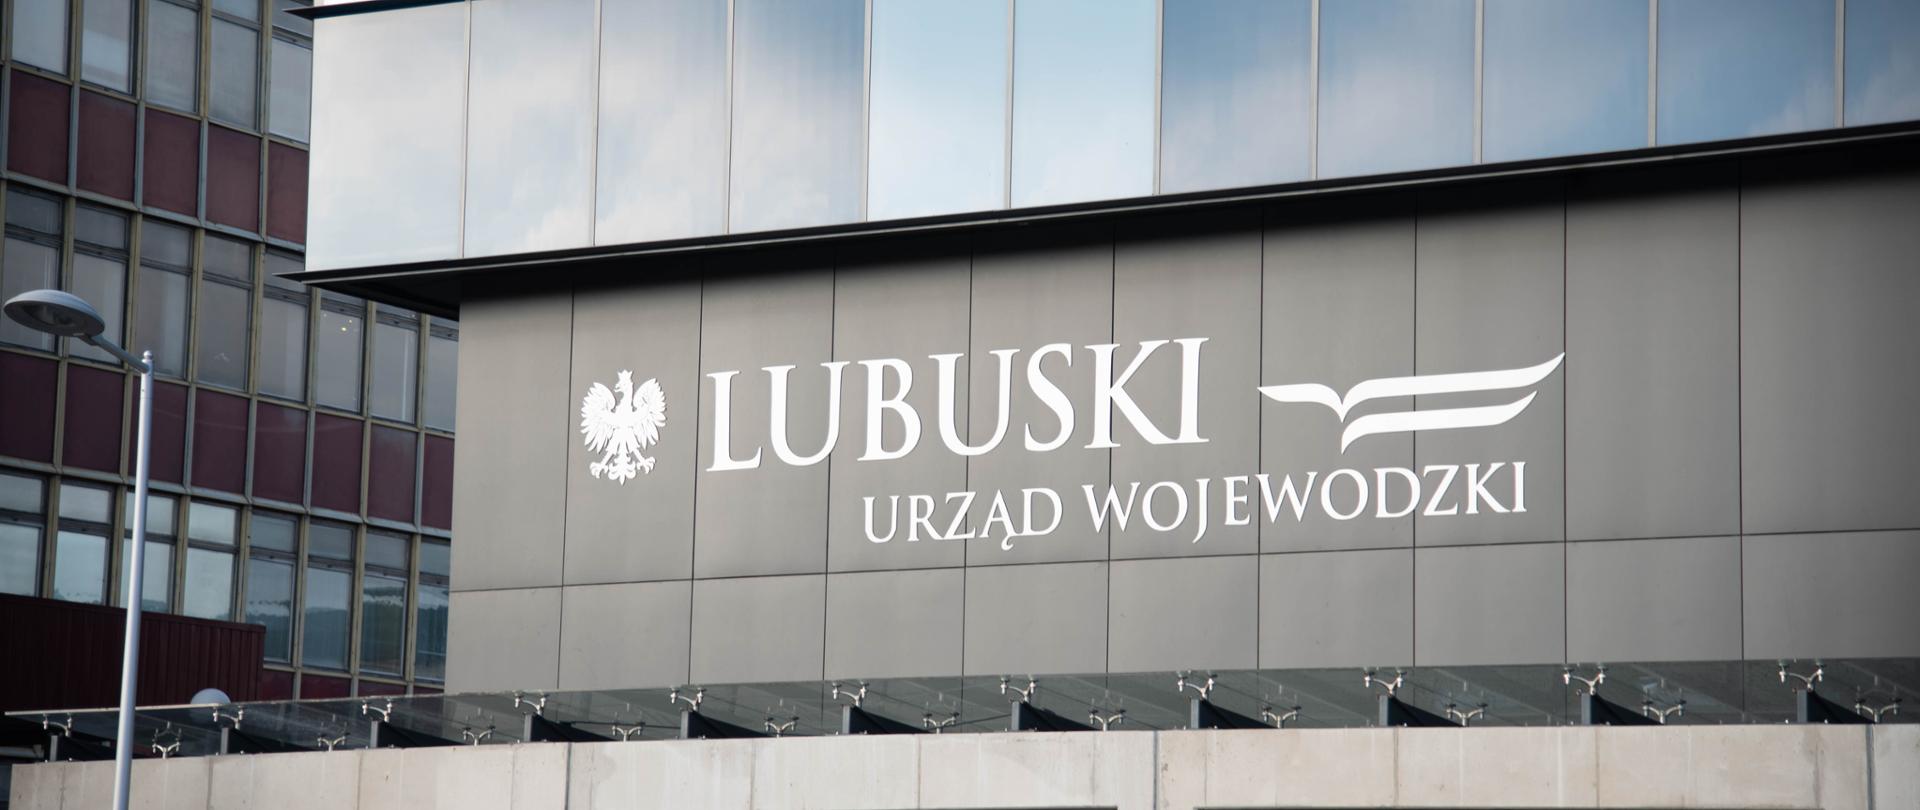 Fasada Lubuskiego Urzędu Wojewódzkiego 